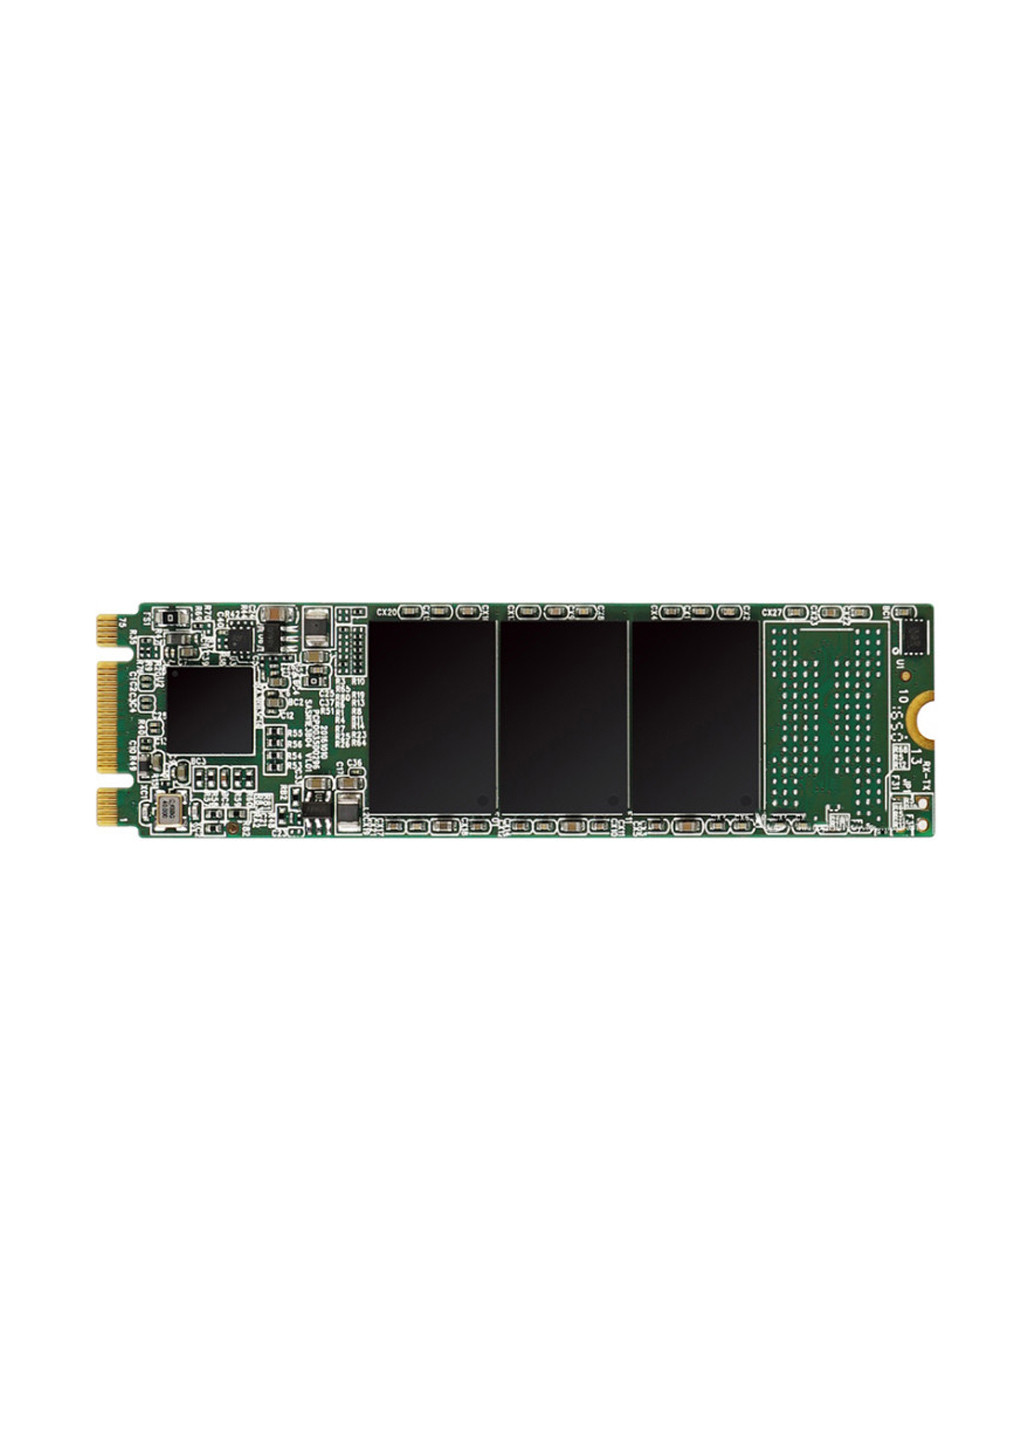 Внутрішній SSD M55 240GB M.2 2280 SATAIII TLC (SP240GBSS3M55M28) Silicon Power внутренний ssd silicon power m55 240gb m.2 2280 sataiii tlc (sp240gbss3m55m28) (131968951)